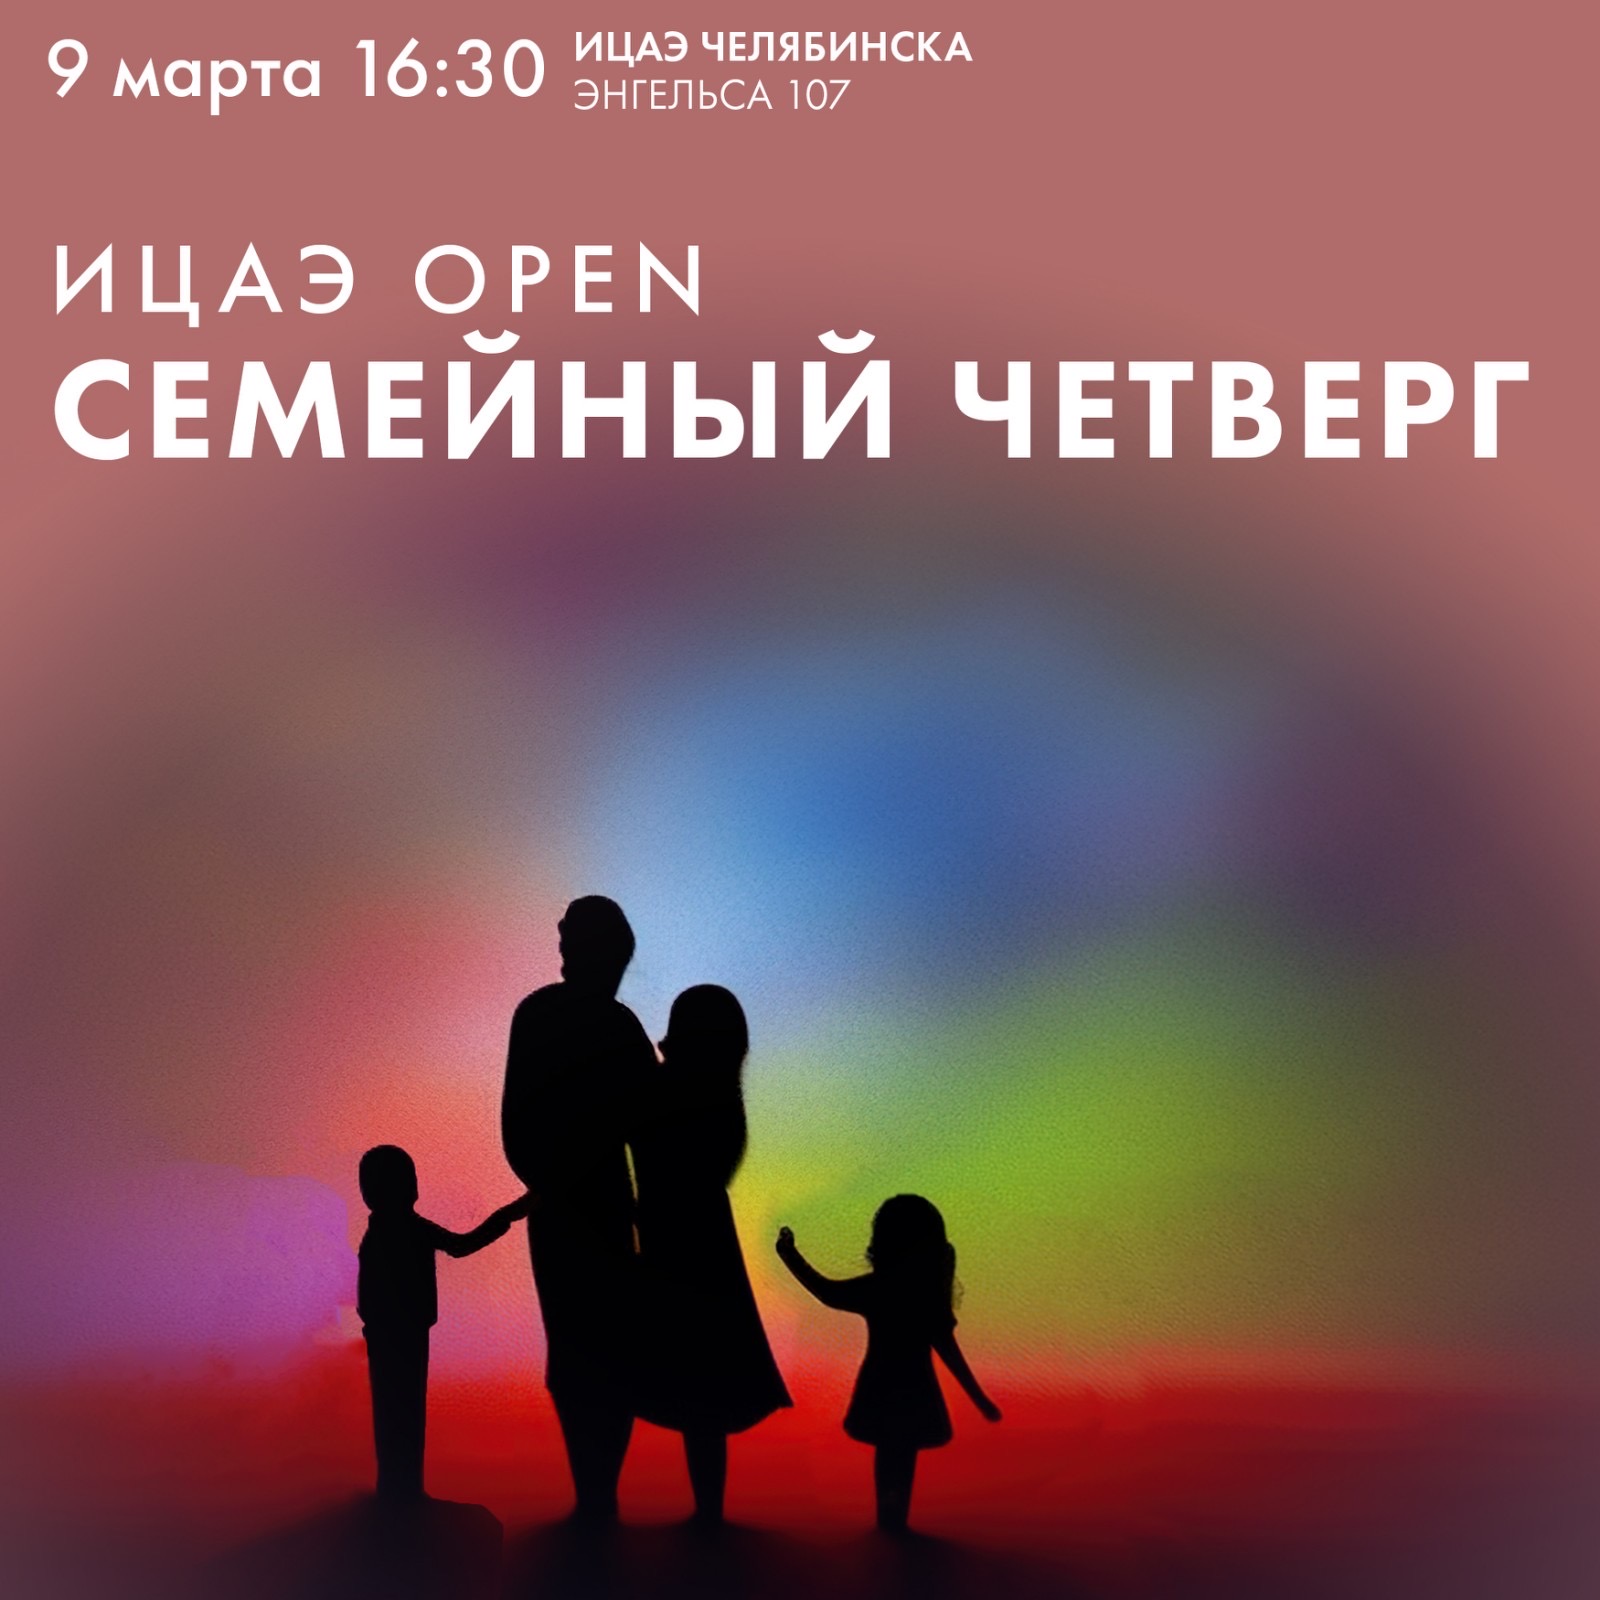 «Семейный четверг» пройдёт в Челябинске